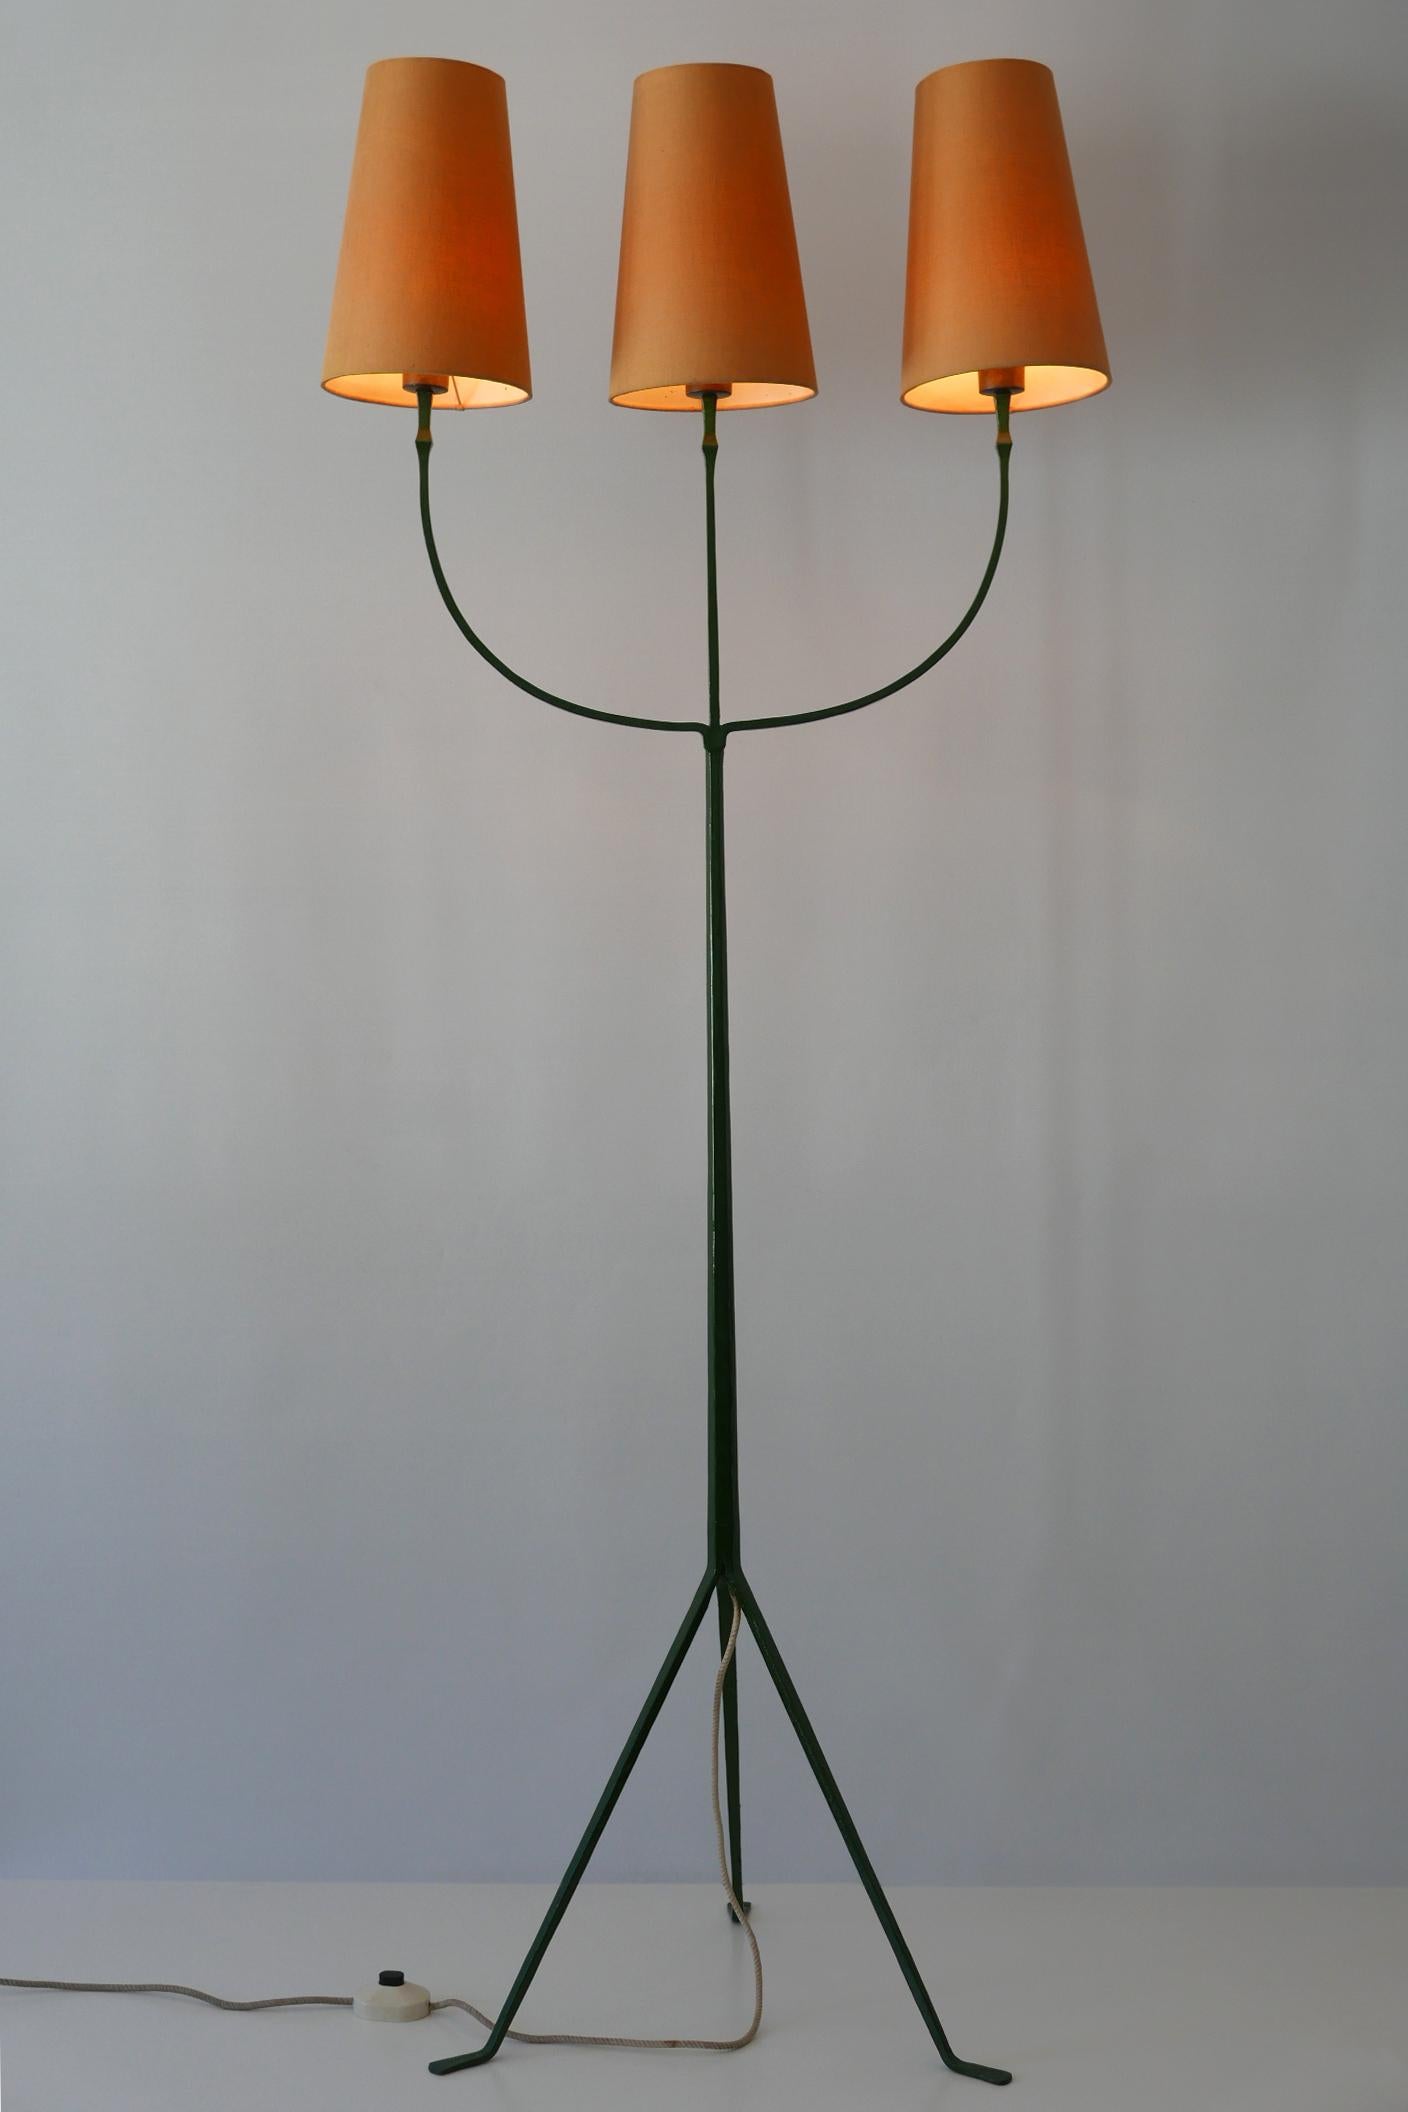 Außergewöhnliche und elegante dreiflammige Stehlampe der Jahrhundertmitte. Hergestellt wahrscheinlich in Frankreich, 1950er Jahre.

Ausgeführt in dunkelgrün emailliertem Schmiedeeisen und Messing, benötigt die Lampe 3 x E27 / E 26 Edison-Schraube